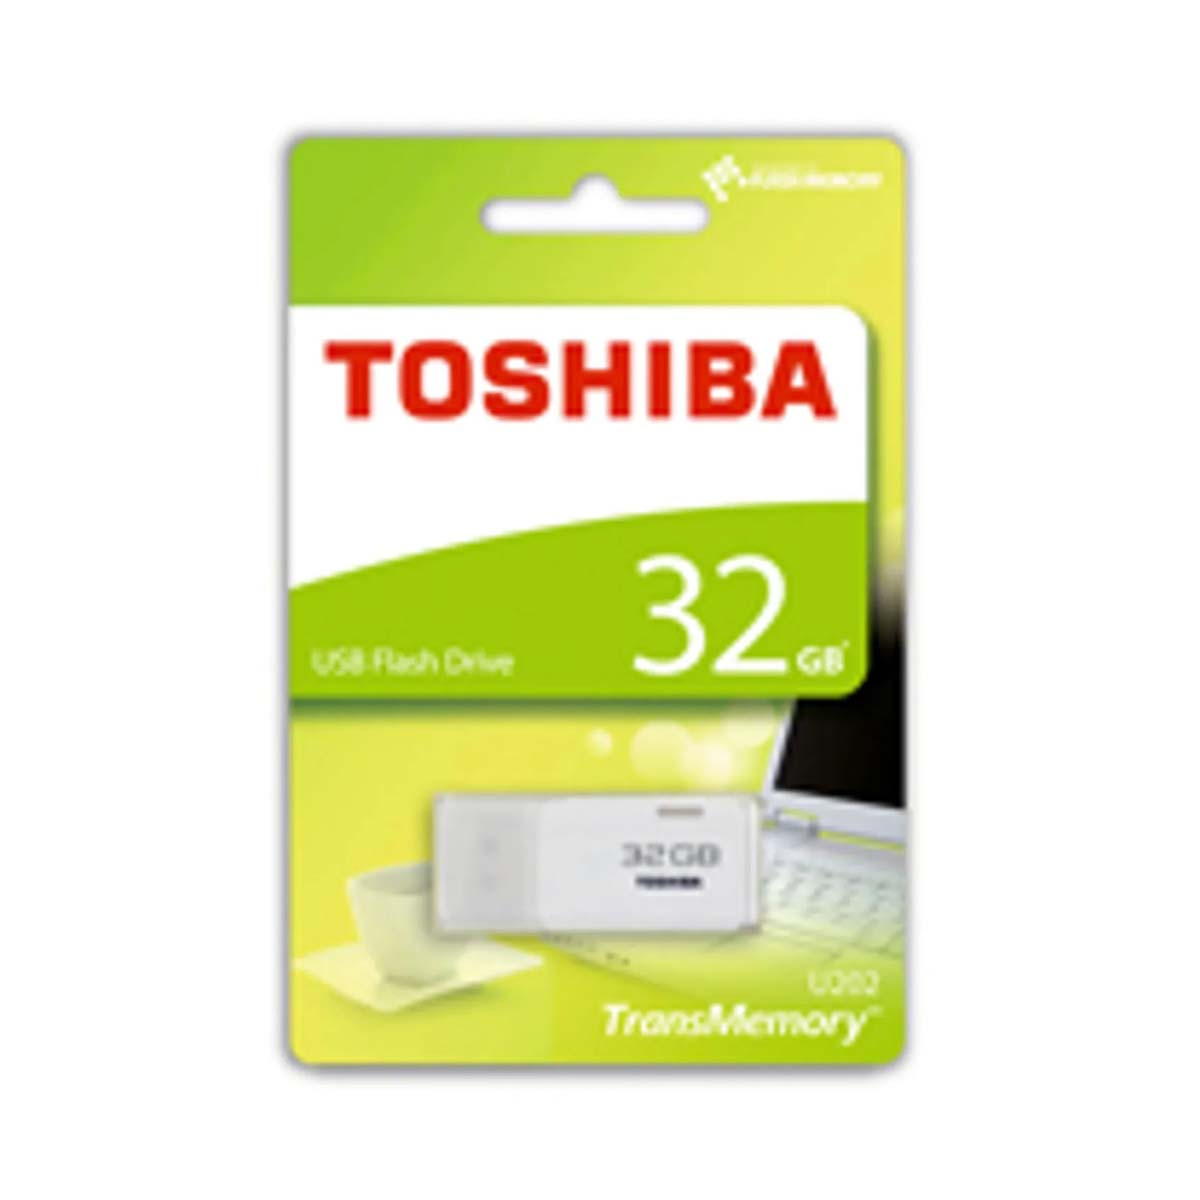 TOSHIBA 32833, Memory Stick 32 USB Stick, GB